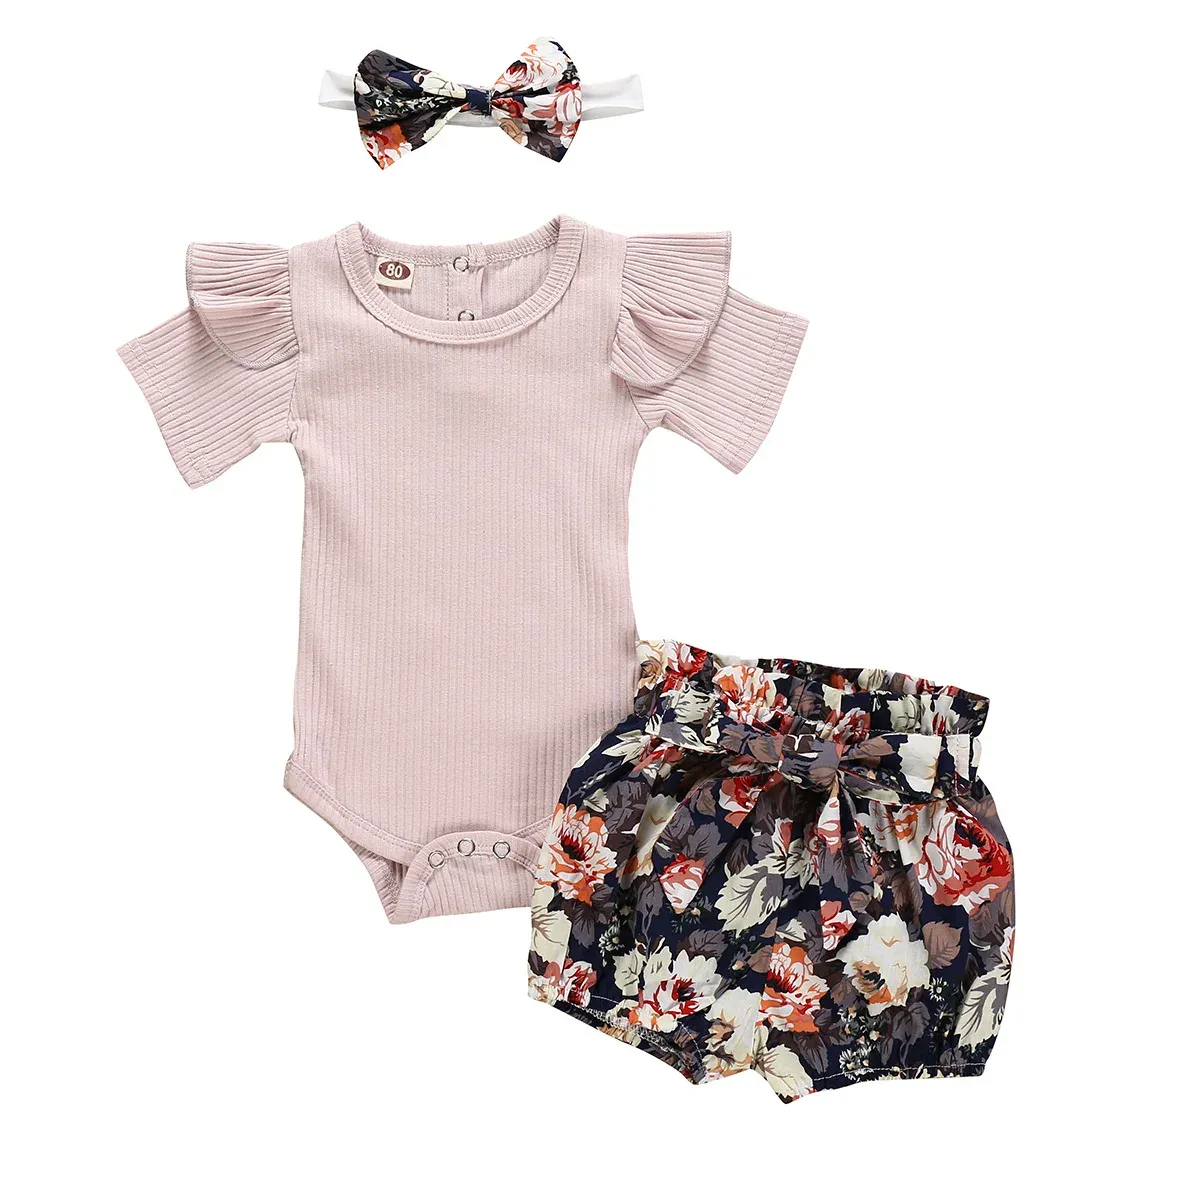 ショーツ新生児の赤ちゃんの服セット夏のソリッドカラーショートスリーブロンパーフラワーショートパンツヘッドバンド3PCS衣装新生幼児服